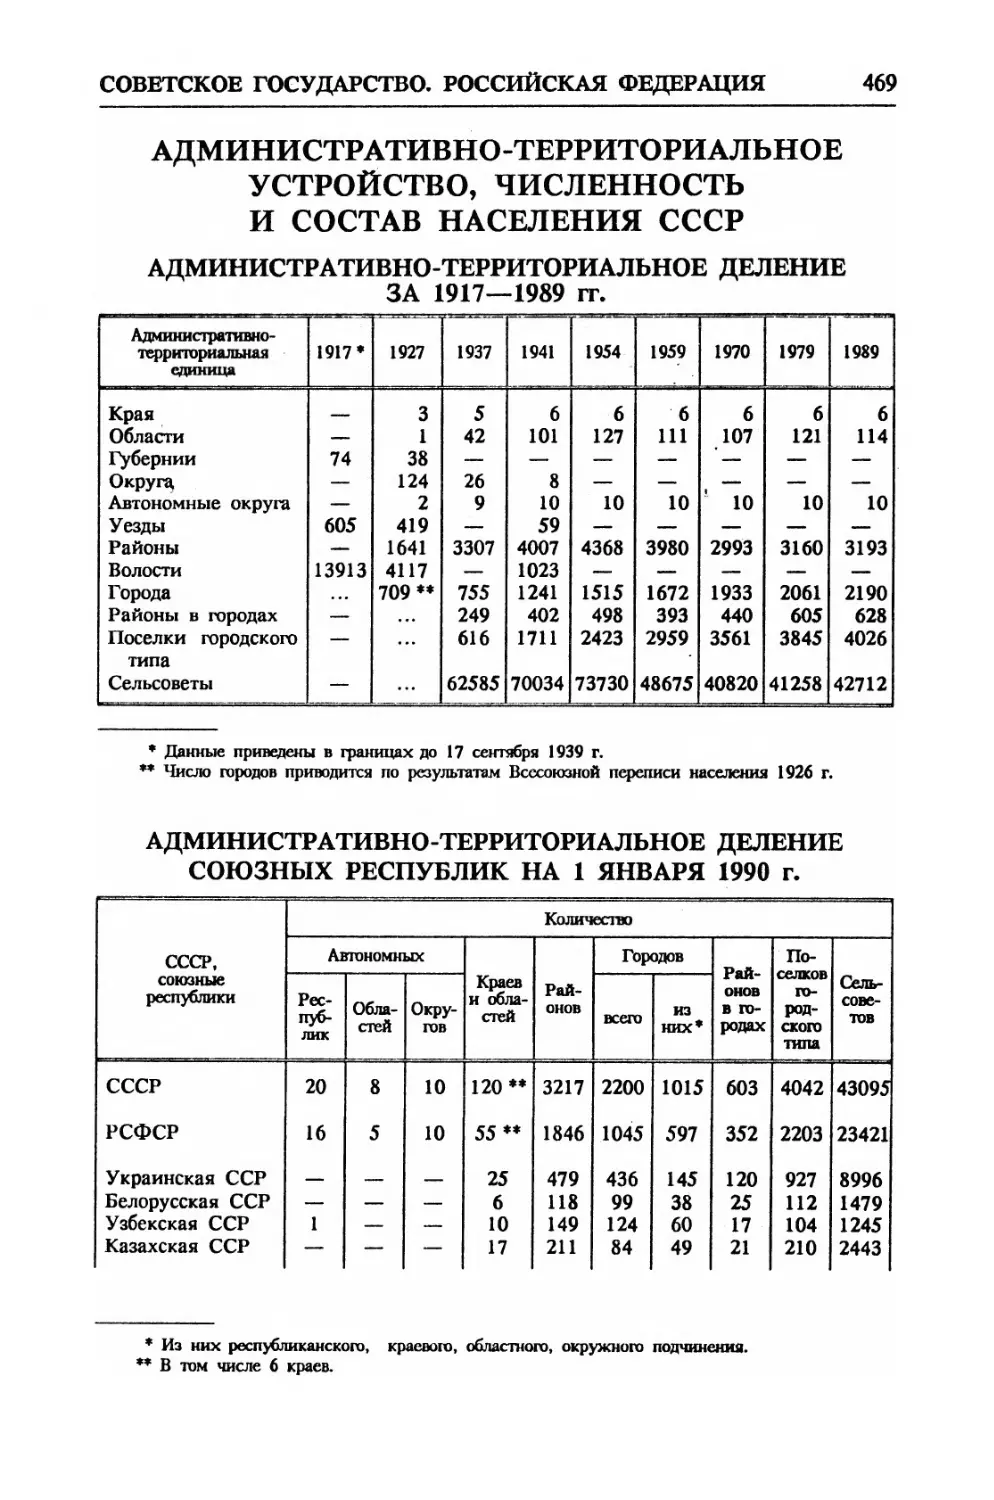 Административно-территориальное устройство, численность и состав населения СССР